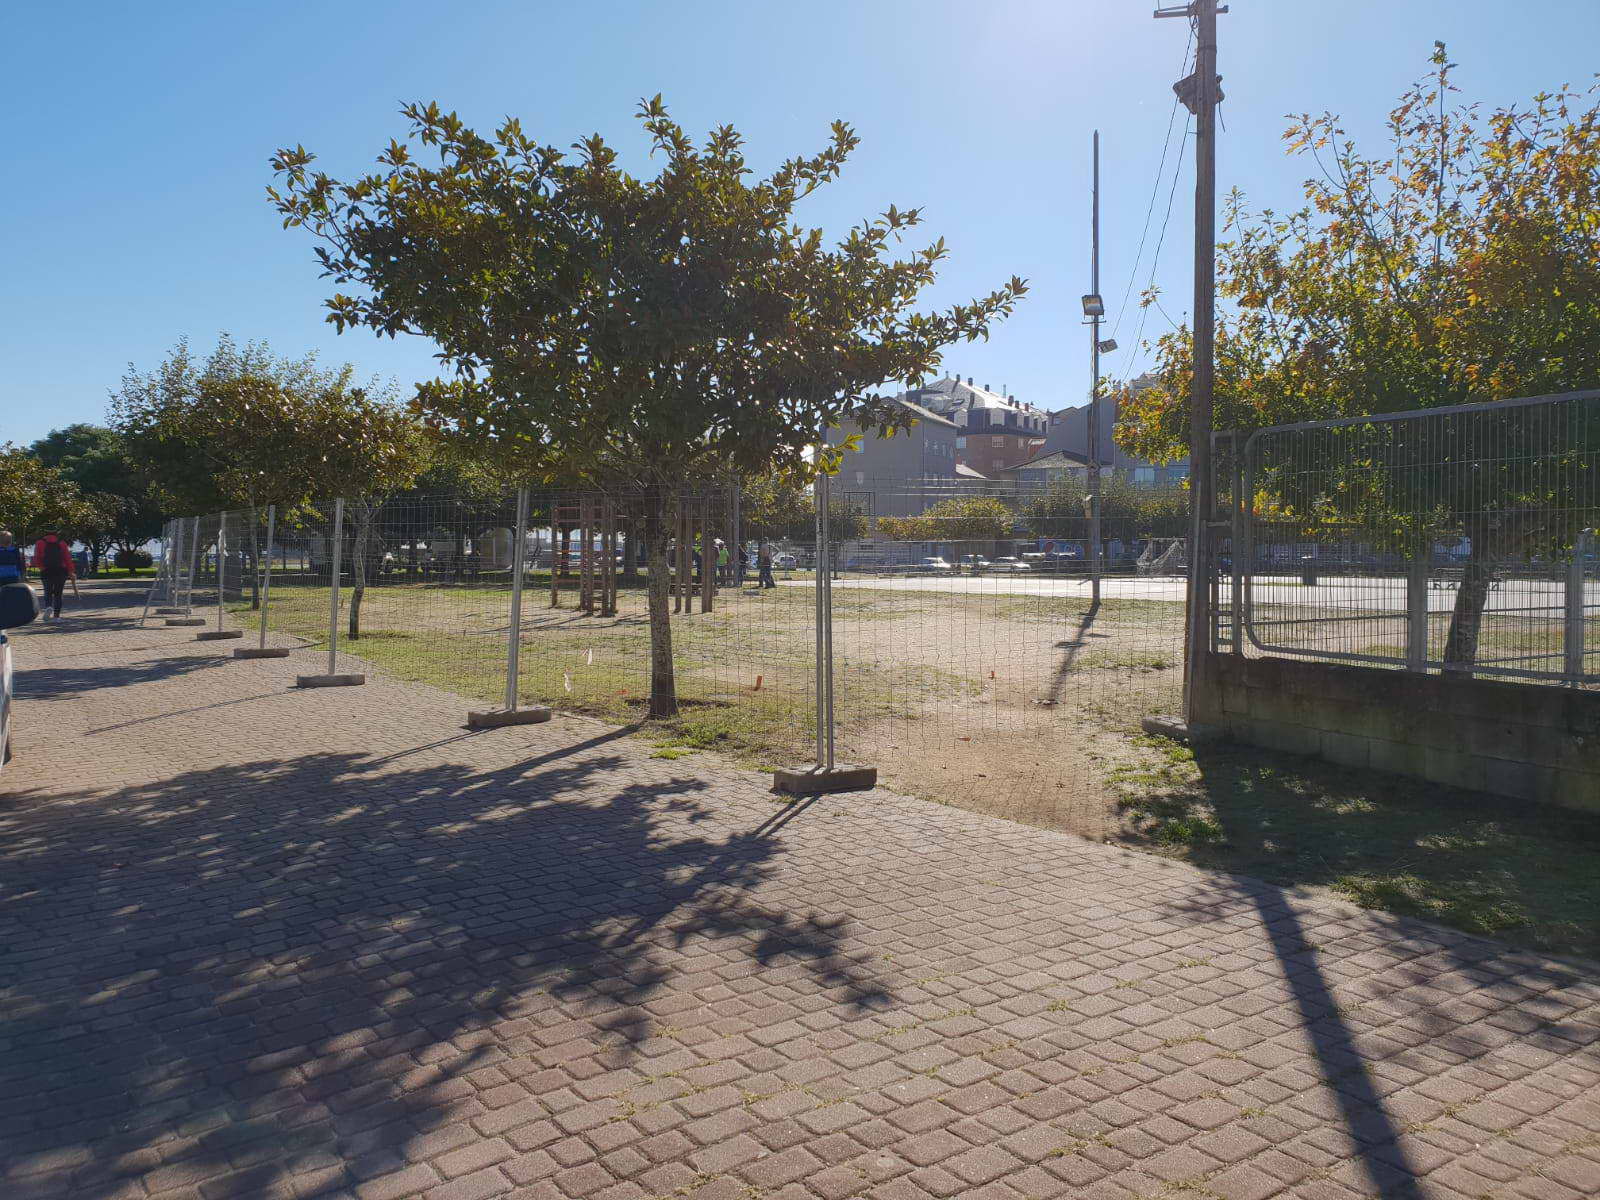 Onte comezaron as obras de reforma integral da zona deportiva do parque Espiñeiro de Portonovo